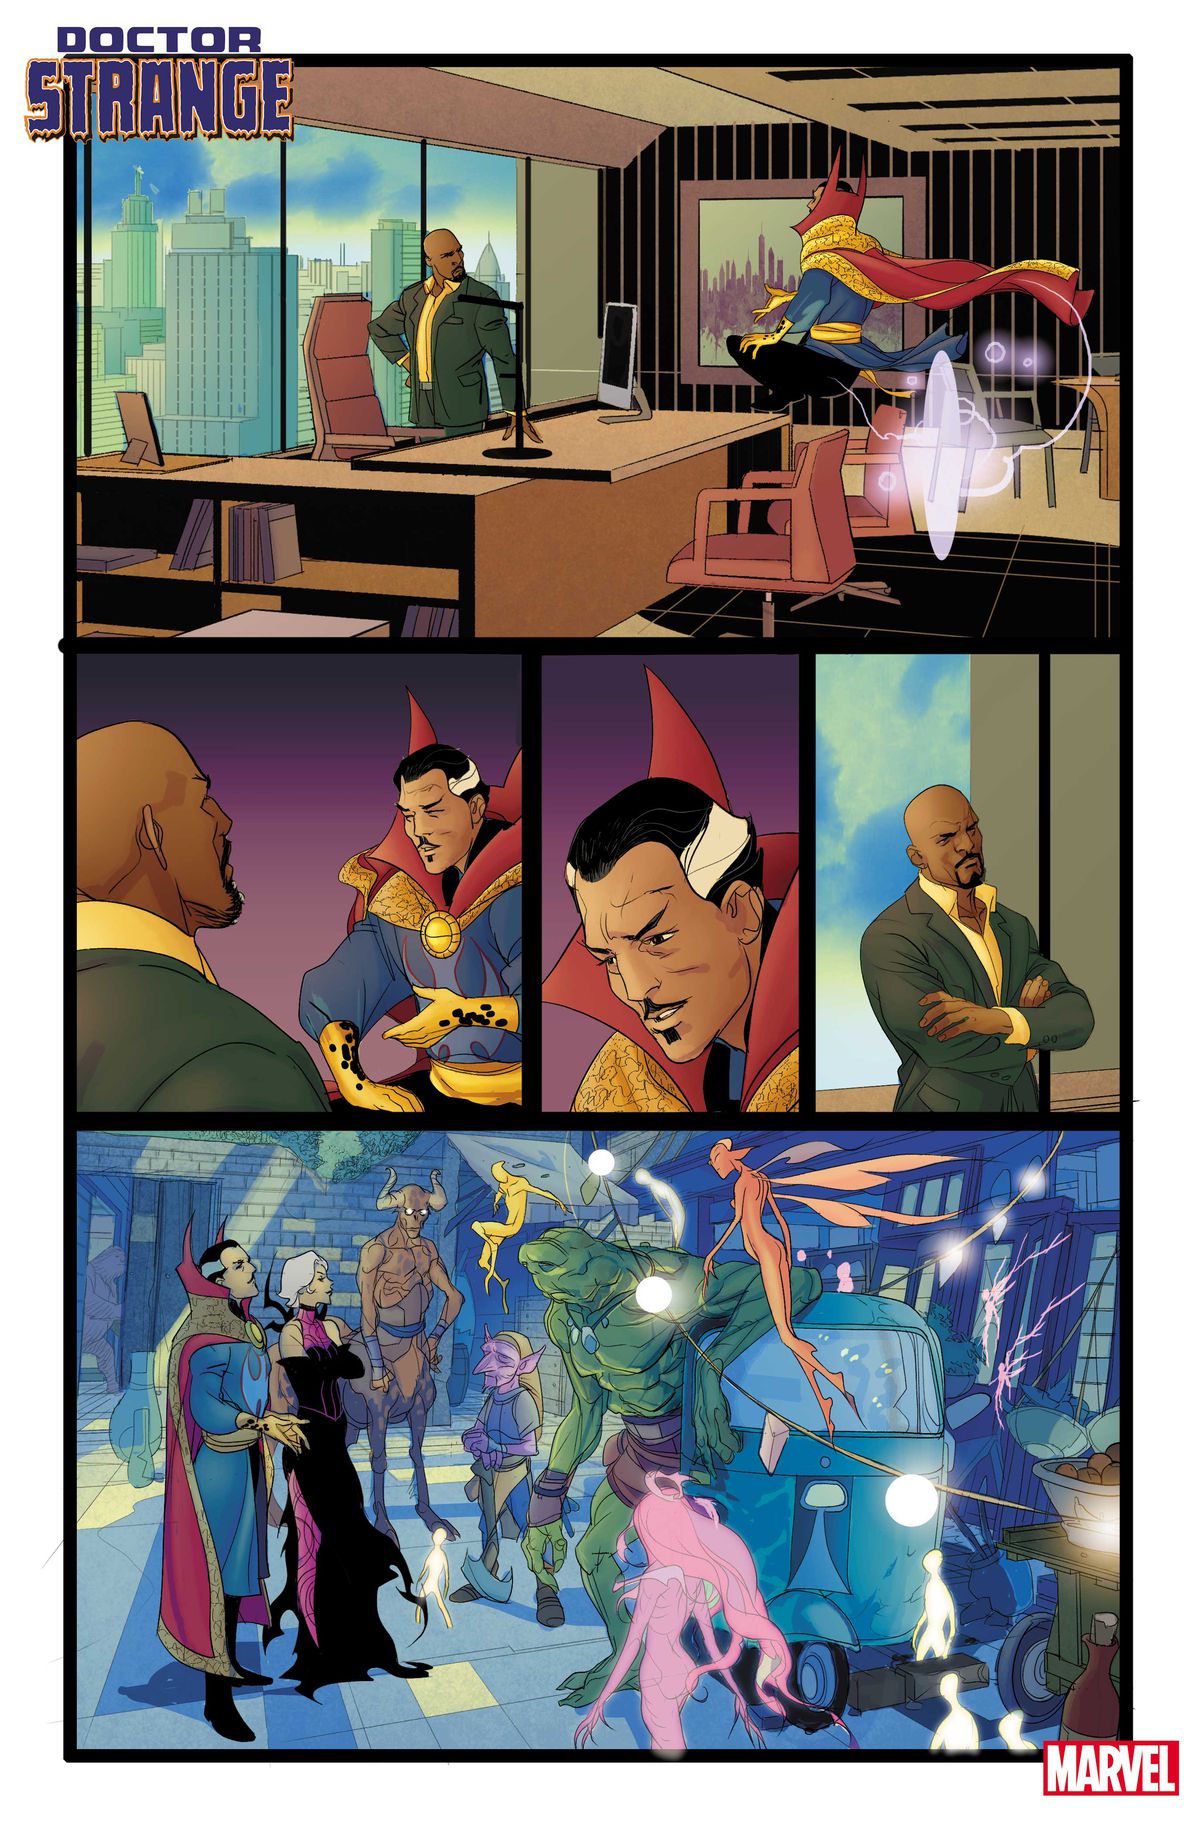 Doctor Strange parla con Luke Cage, sindaco di New York City, nel suo ufficio;  poi si vedono Clea e Strange parlare con una mezza dozzina di strane creature magiche per strada in Doctor Strange # 1 (2023).